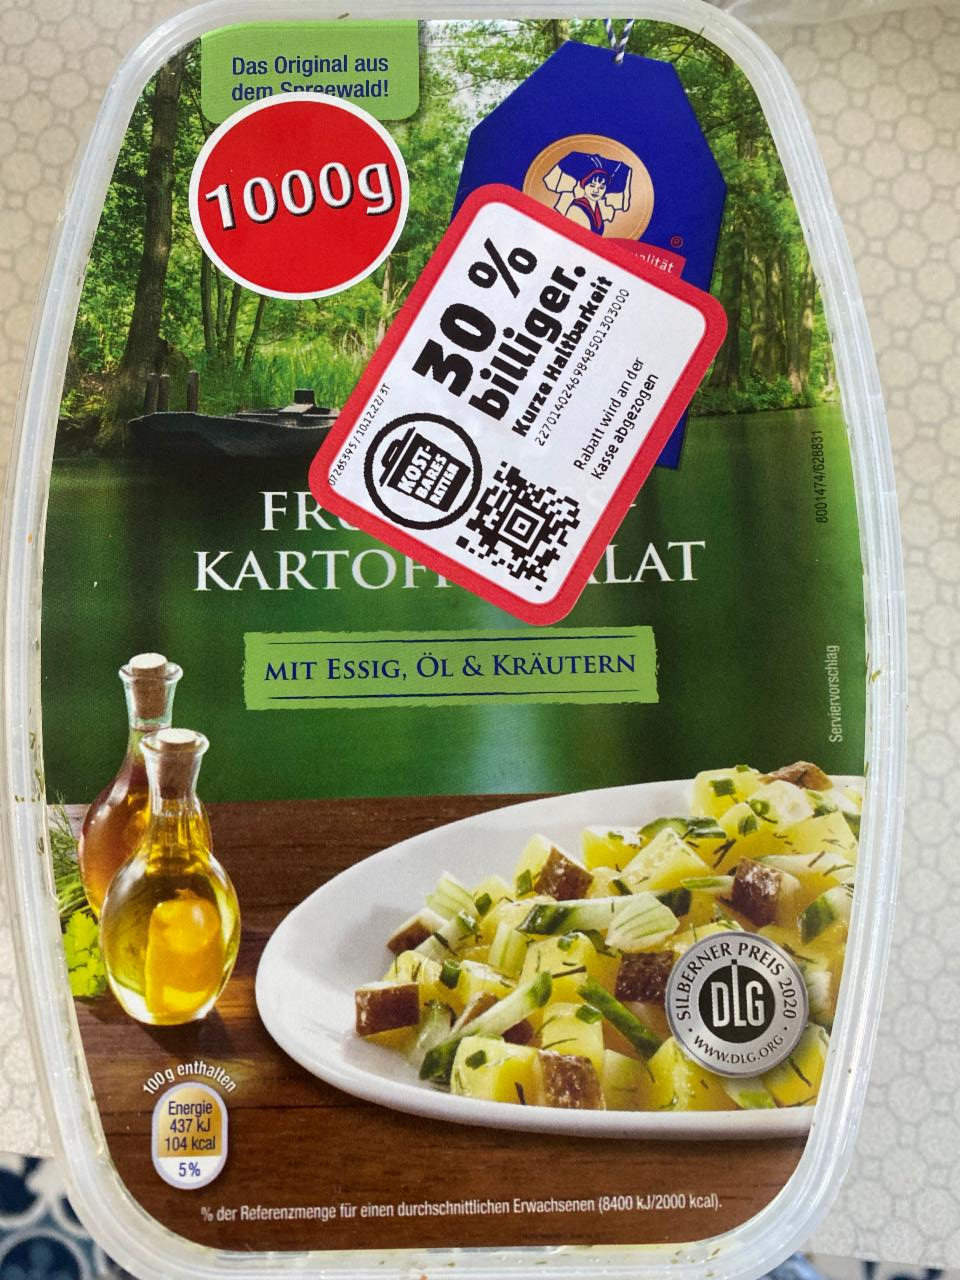 Фото - салат картофельный с огурцом и оливковым маслом Golßener